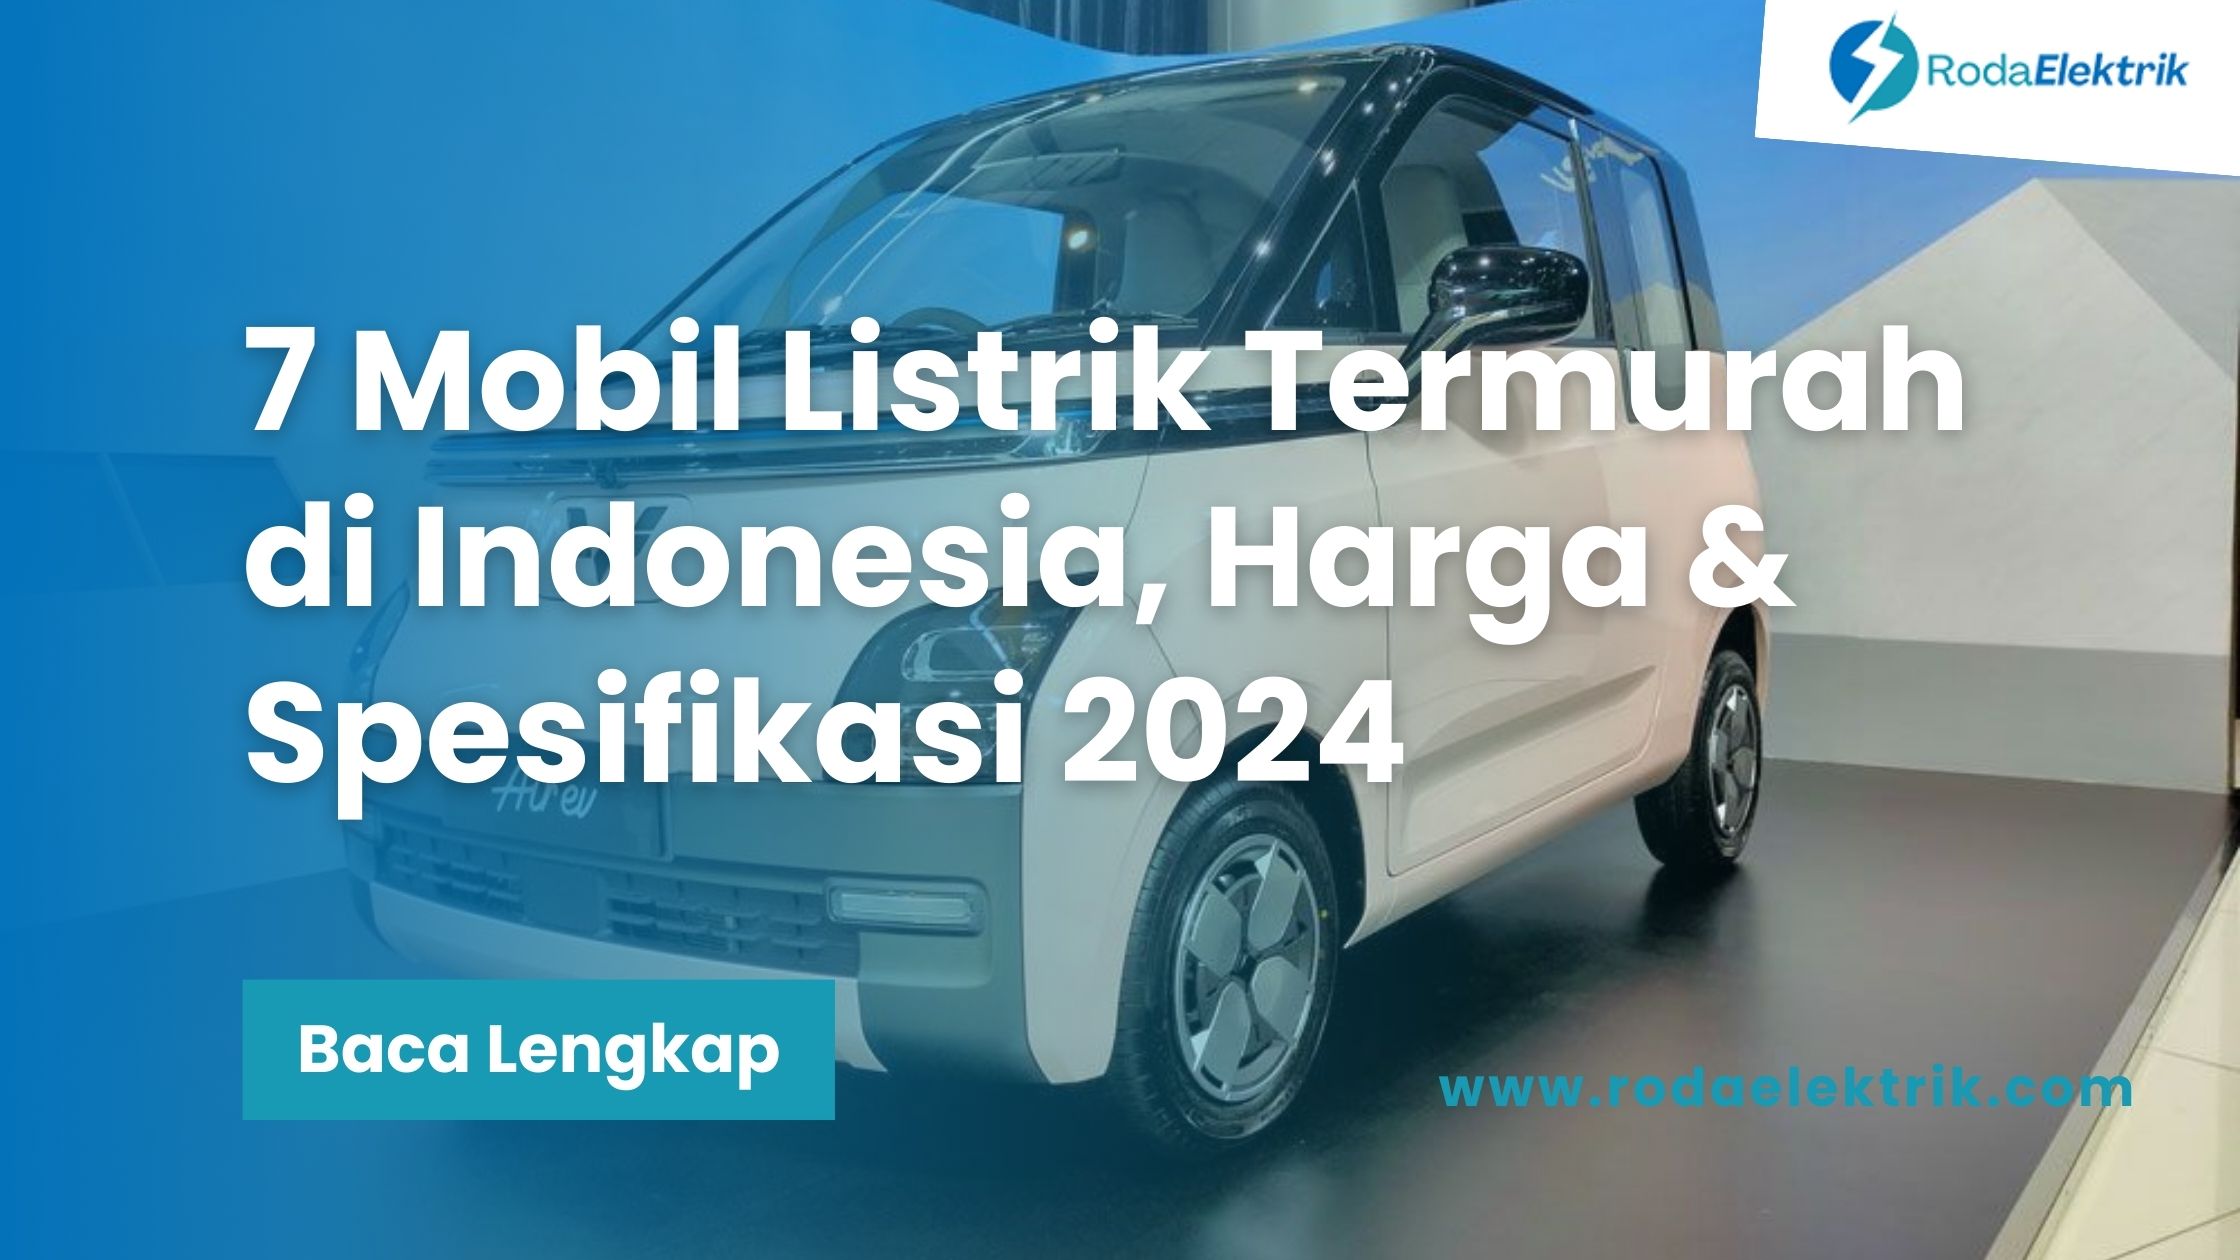 Mobil Listrik Termurah di Indonesia